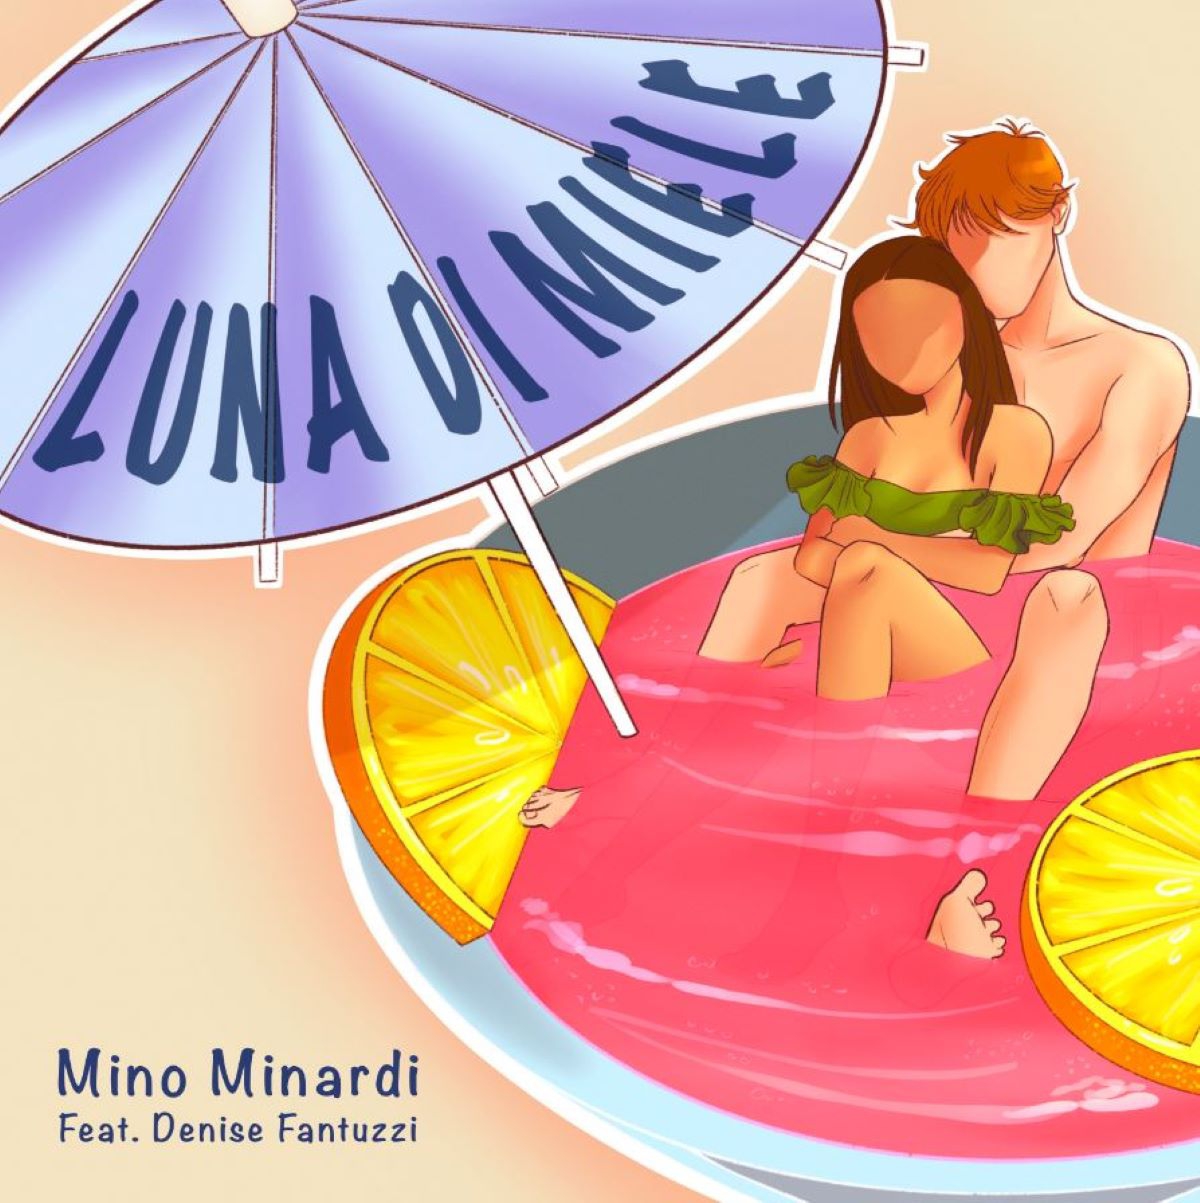 Mino Minardi feat. Denise Fantuzzi - “Luna di Miele”